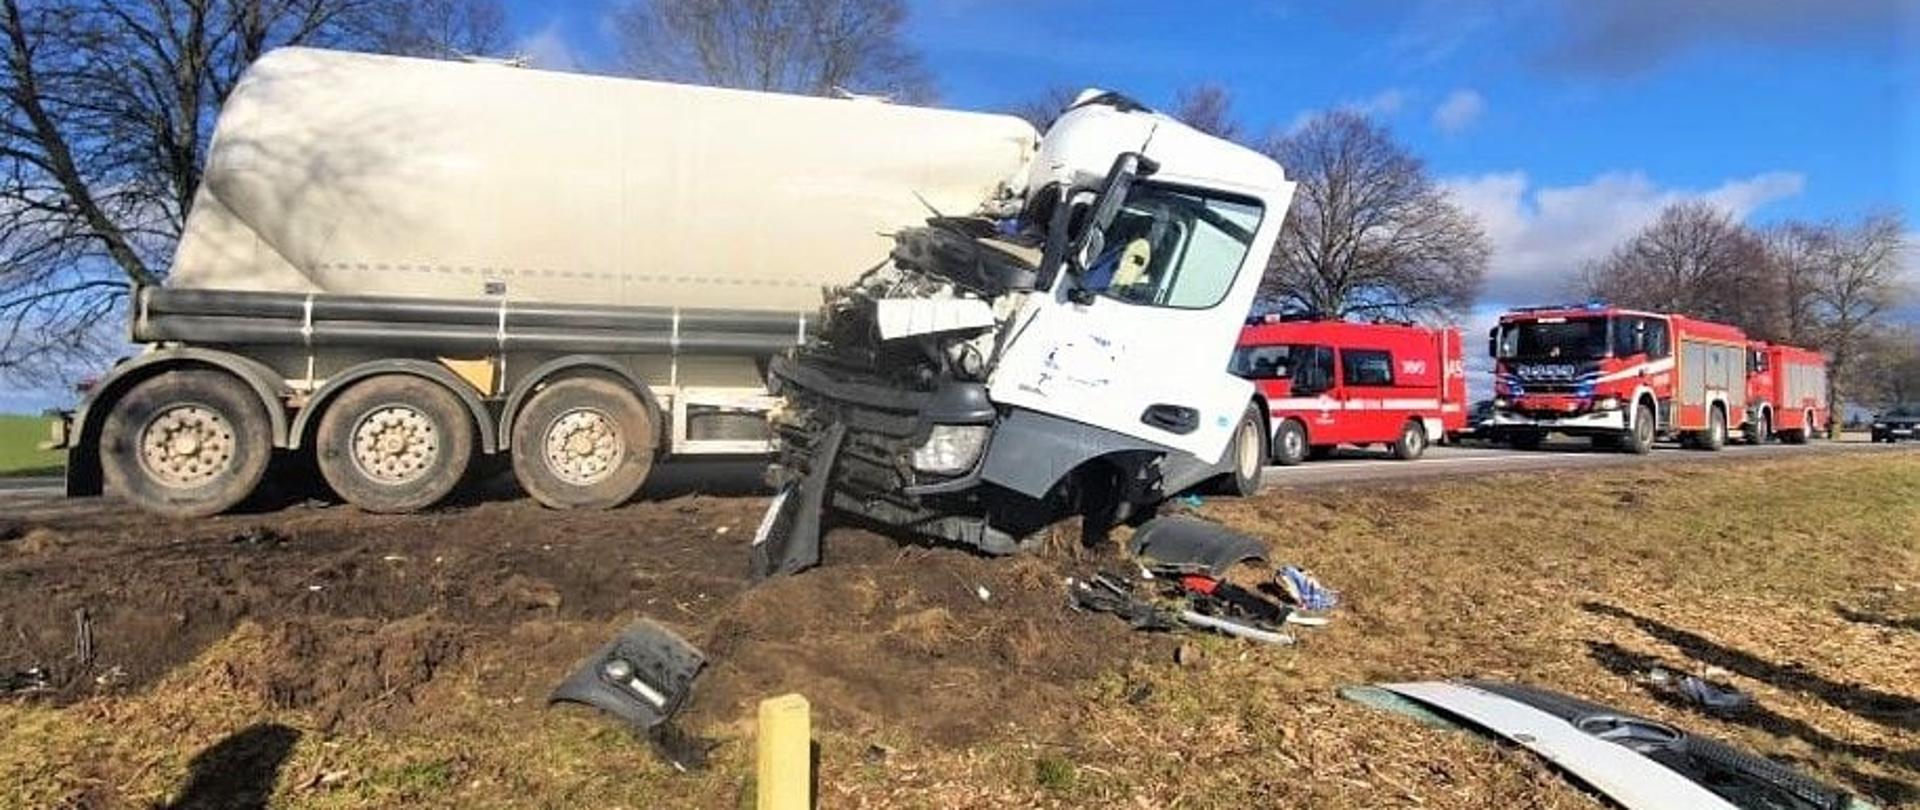 Zdjęcie przedstawia rozbity samochód ciężarowy.